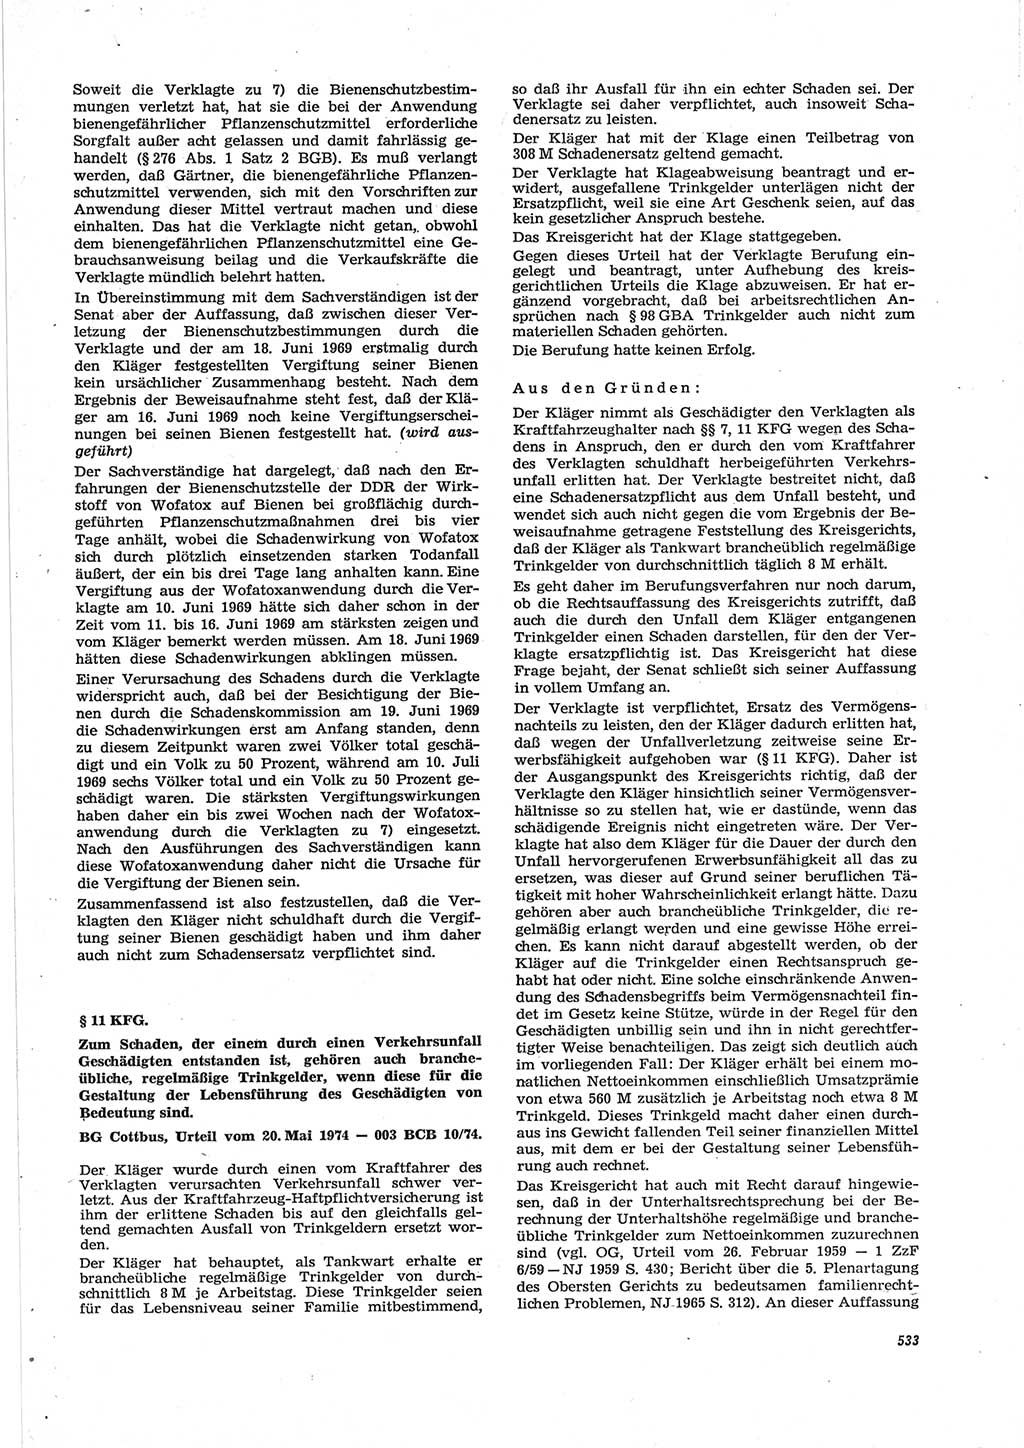 Neue Justiz (NJ), Zeitschrift für Recht und Rechtswissenschaft [Deutsche Demokratische Republik (DDR)], 28. Jahrgang 1974, Seite 533 (NJ DDR 1974, S. 533)